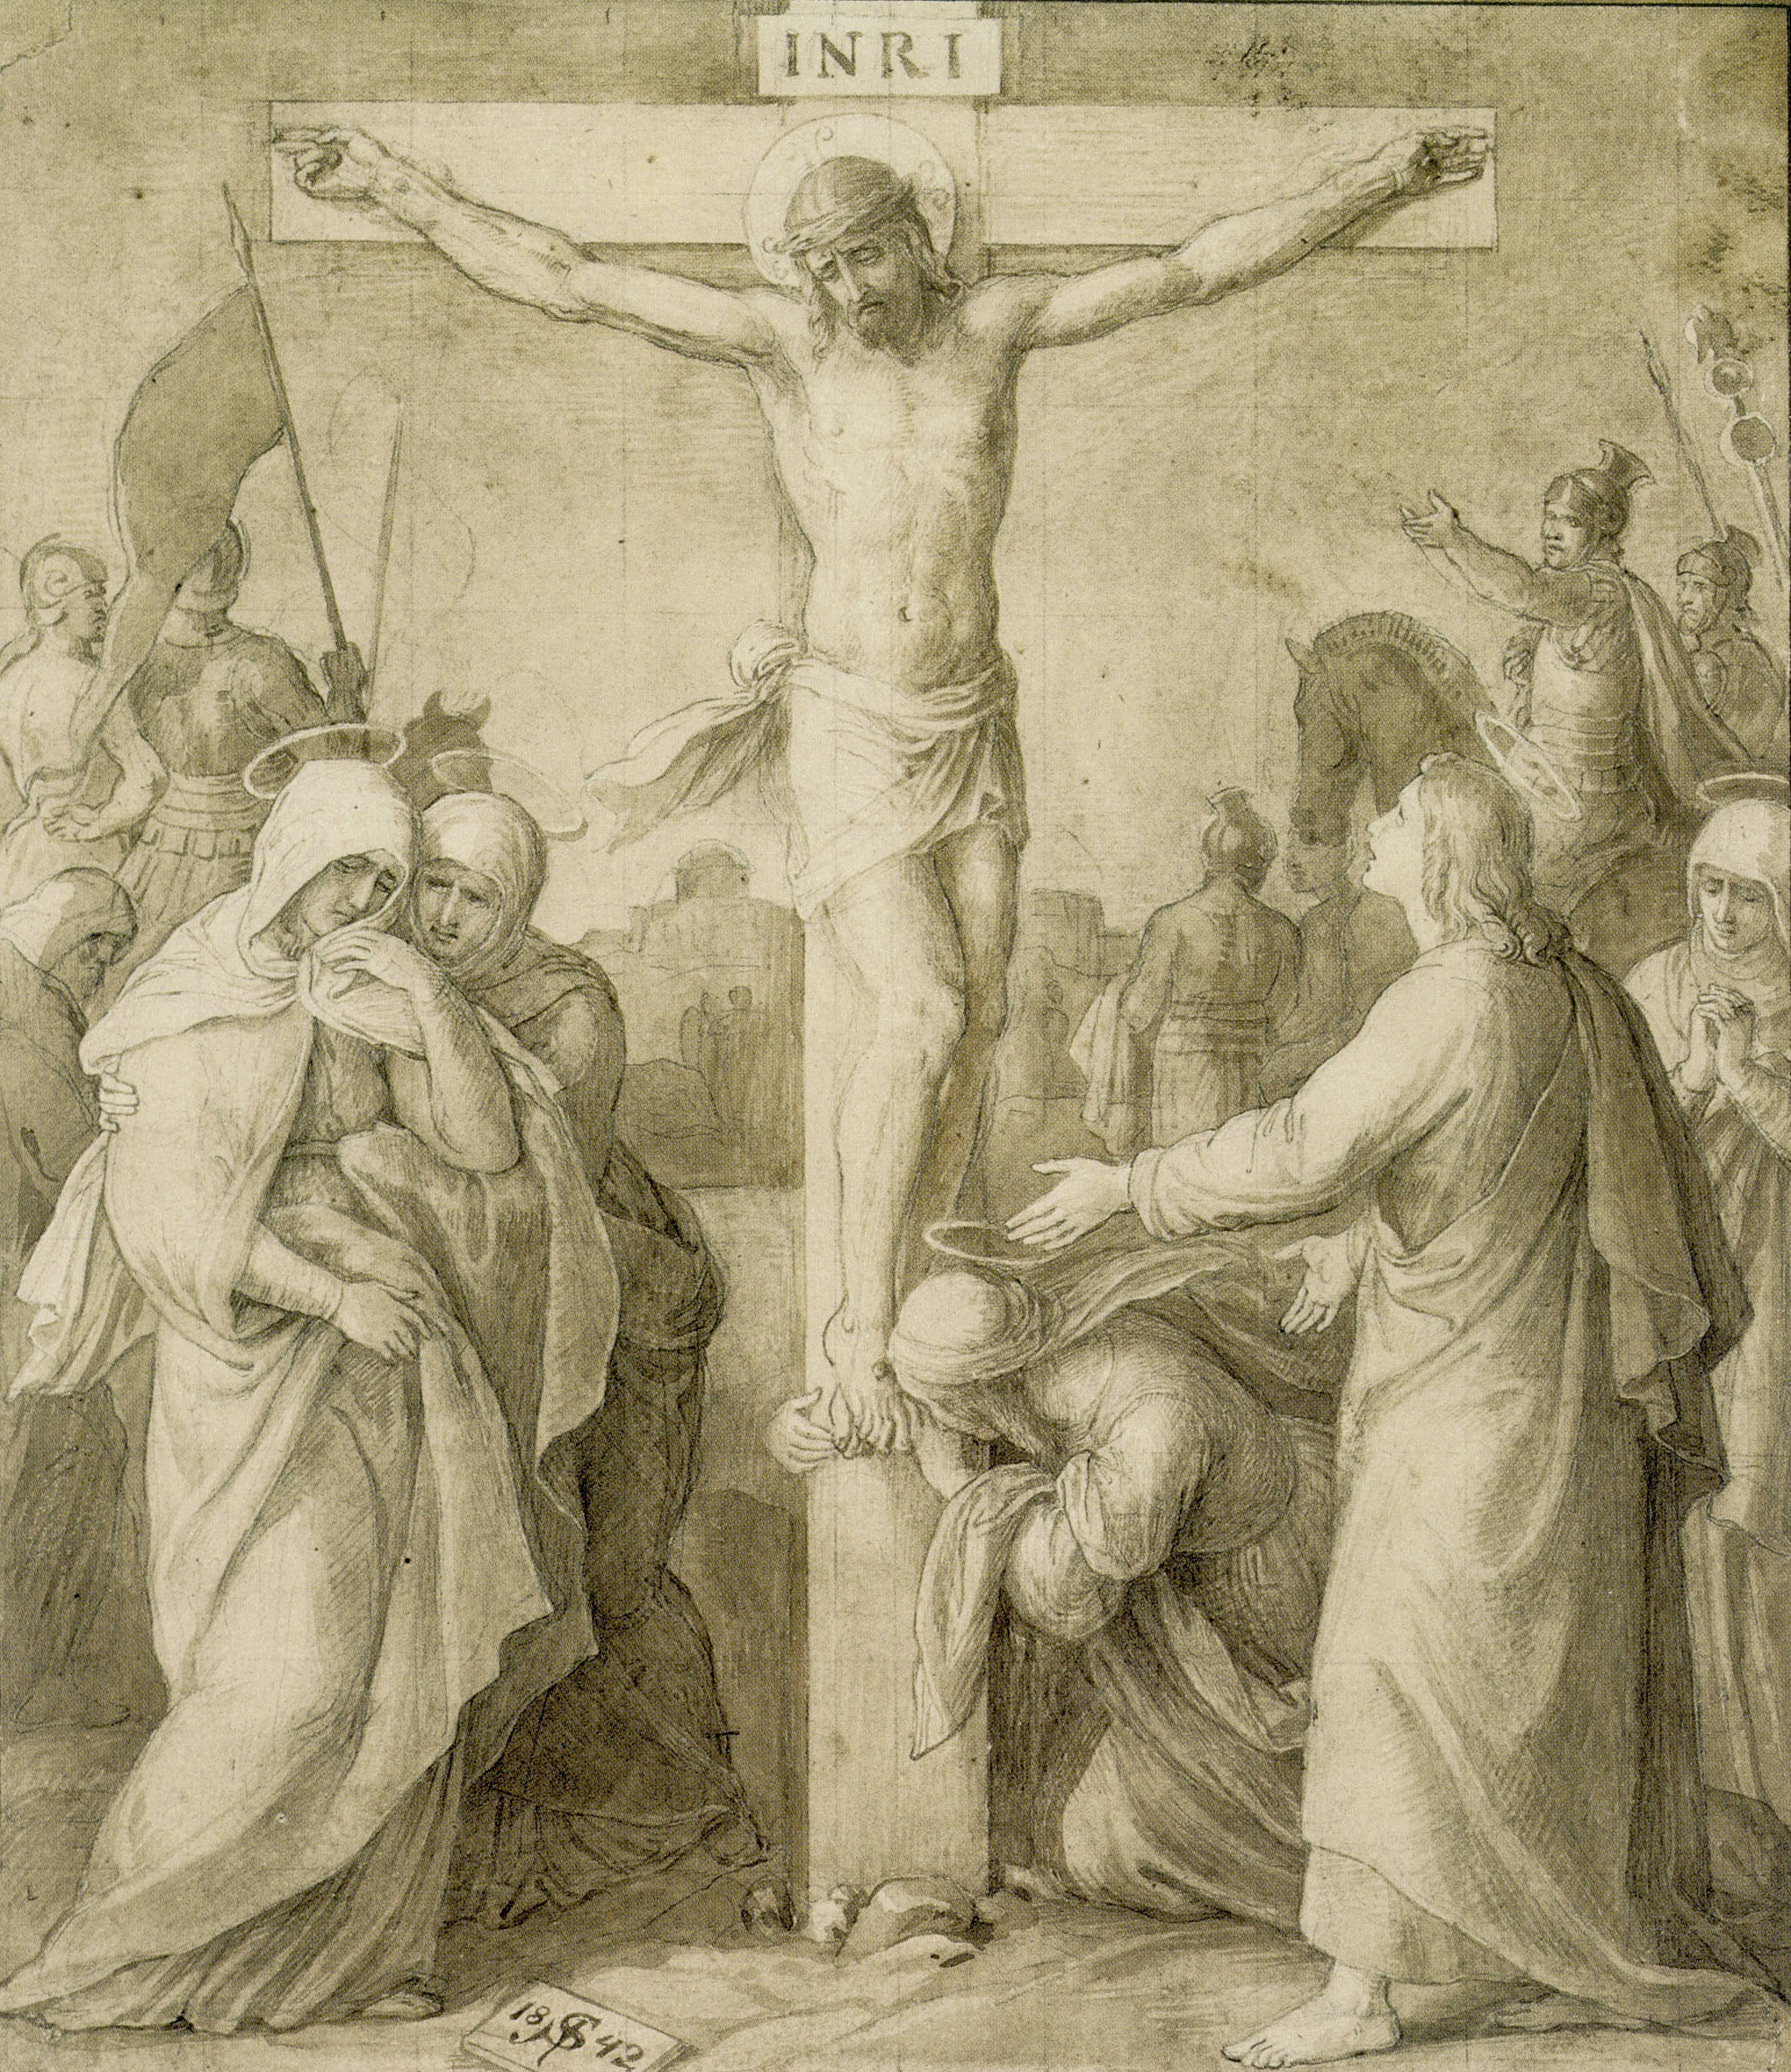 Kristaus nukryžiavimas. Julius Schnorr von Carolsfeld, 1842 Kreuzigung Christi 2